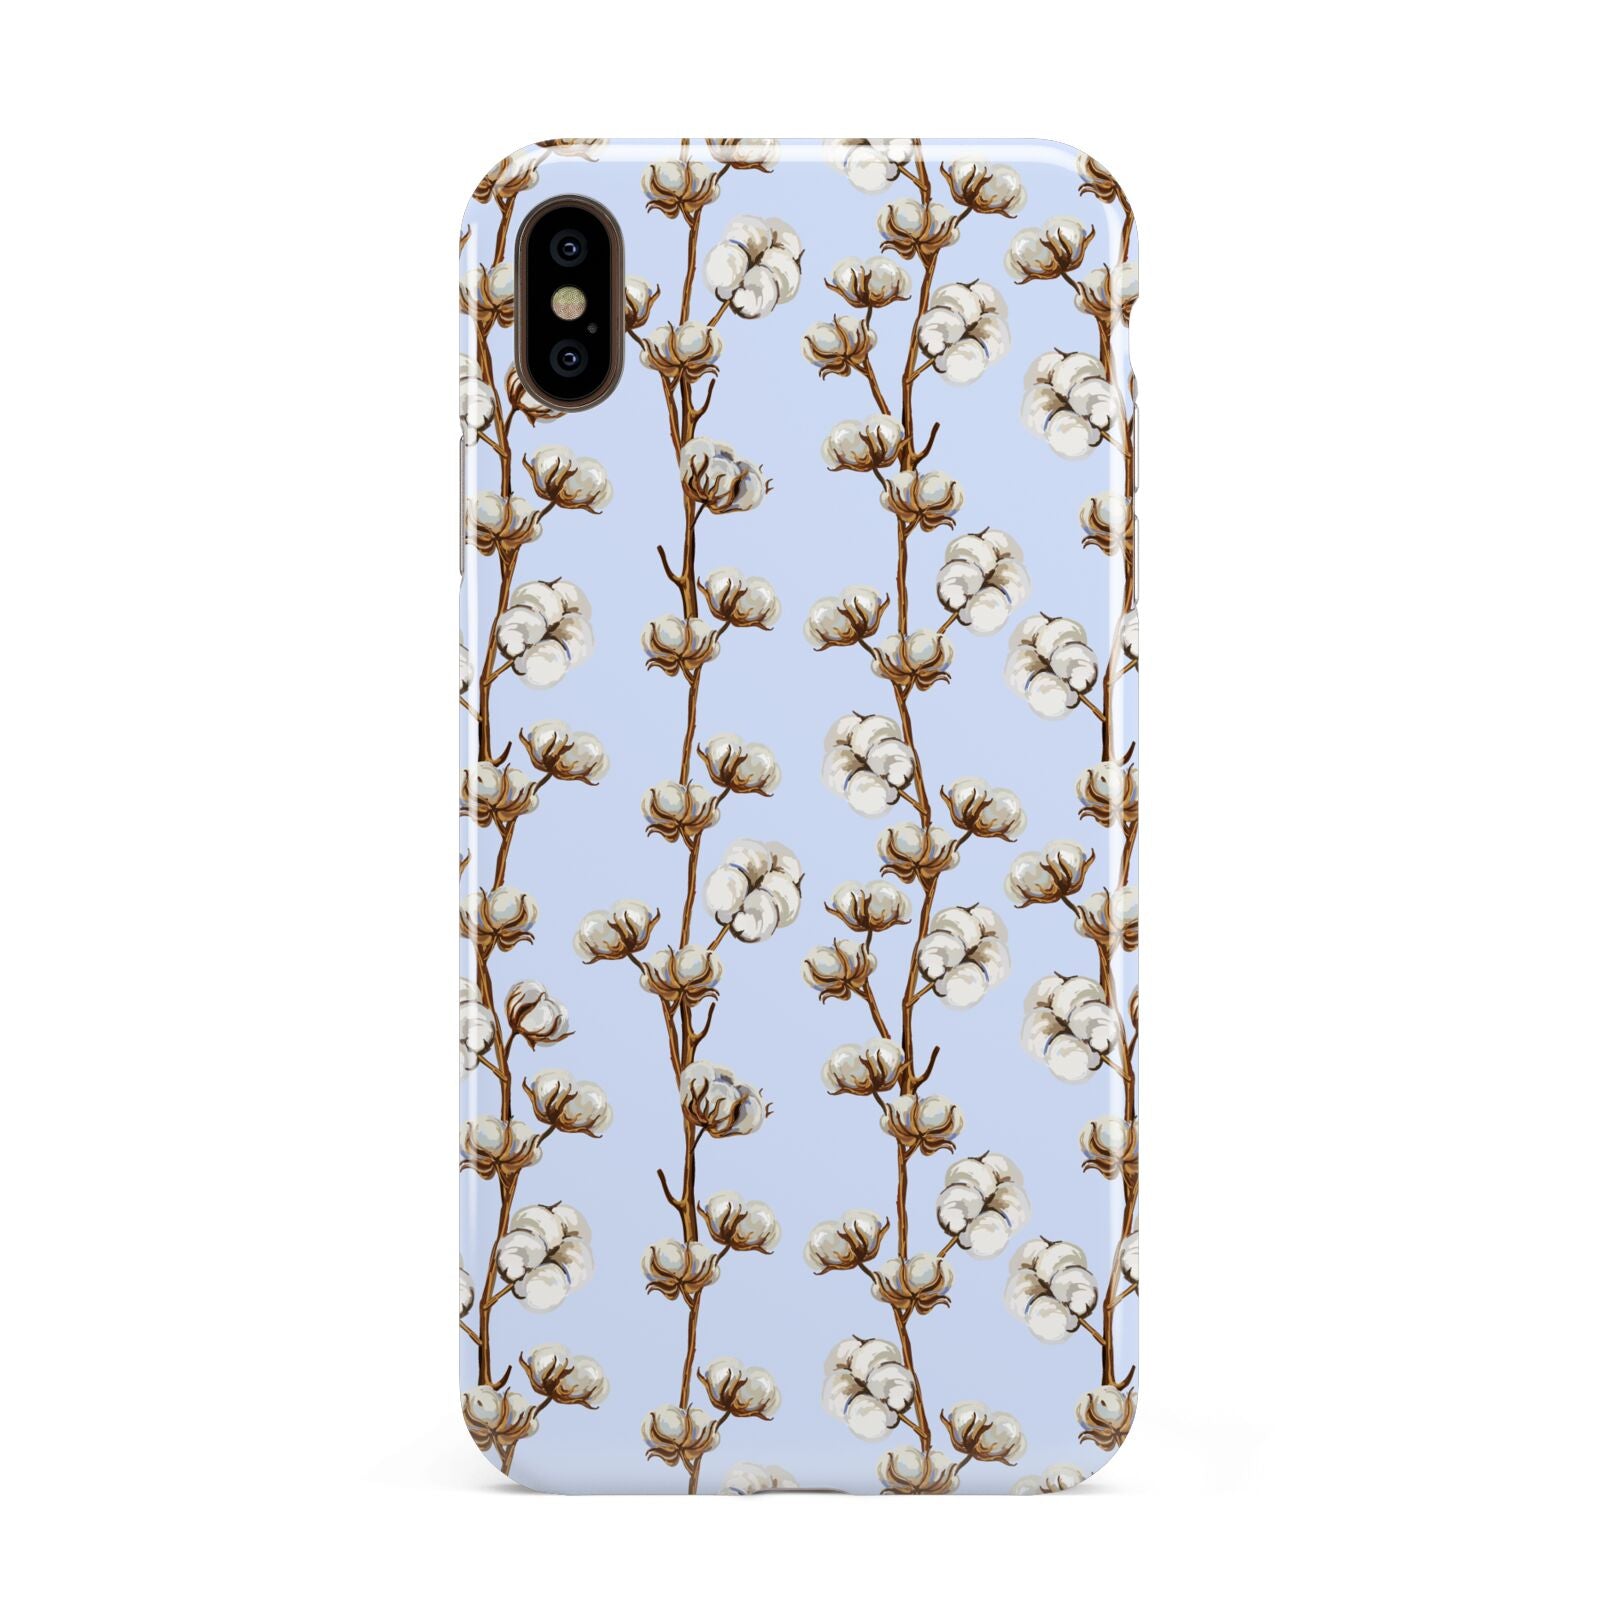 Cotton Branch Apple iPhone Xs Max 3D Tough Case